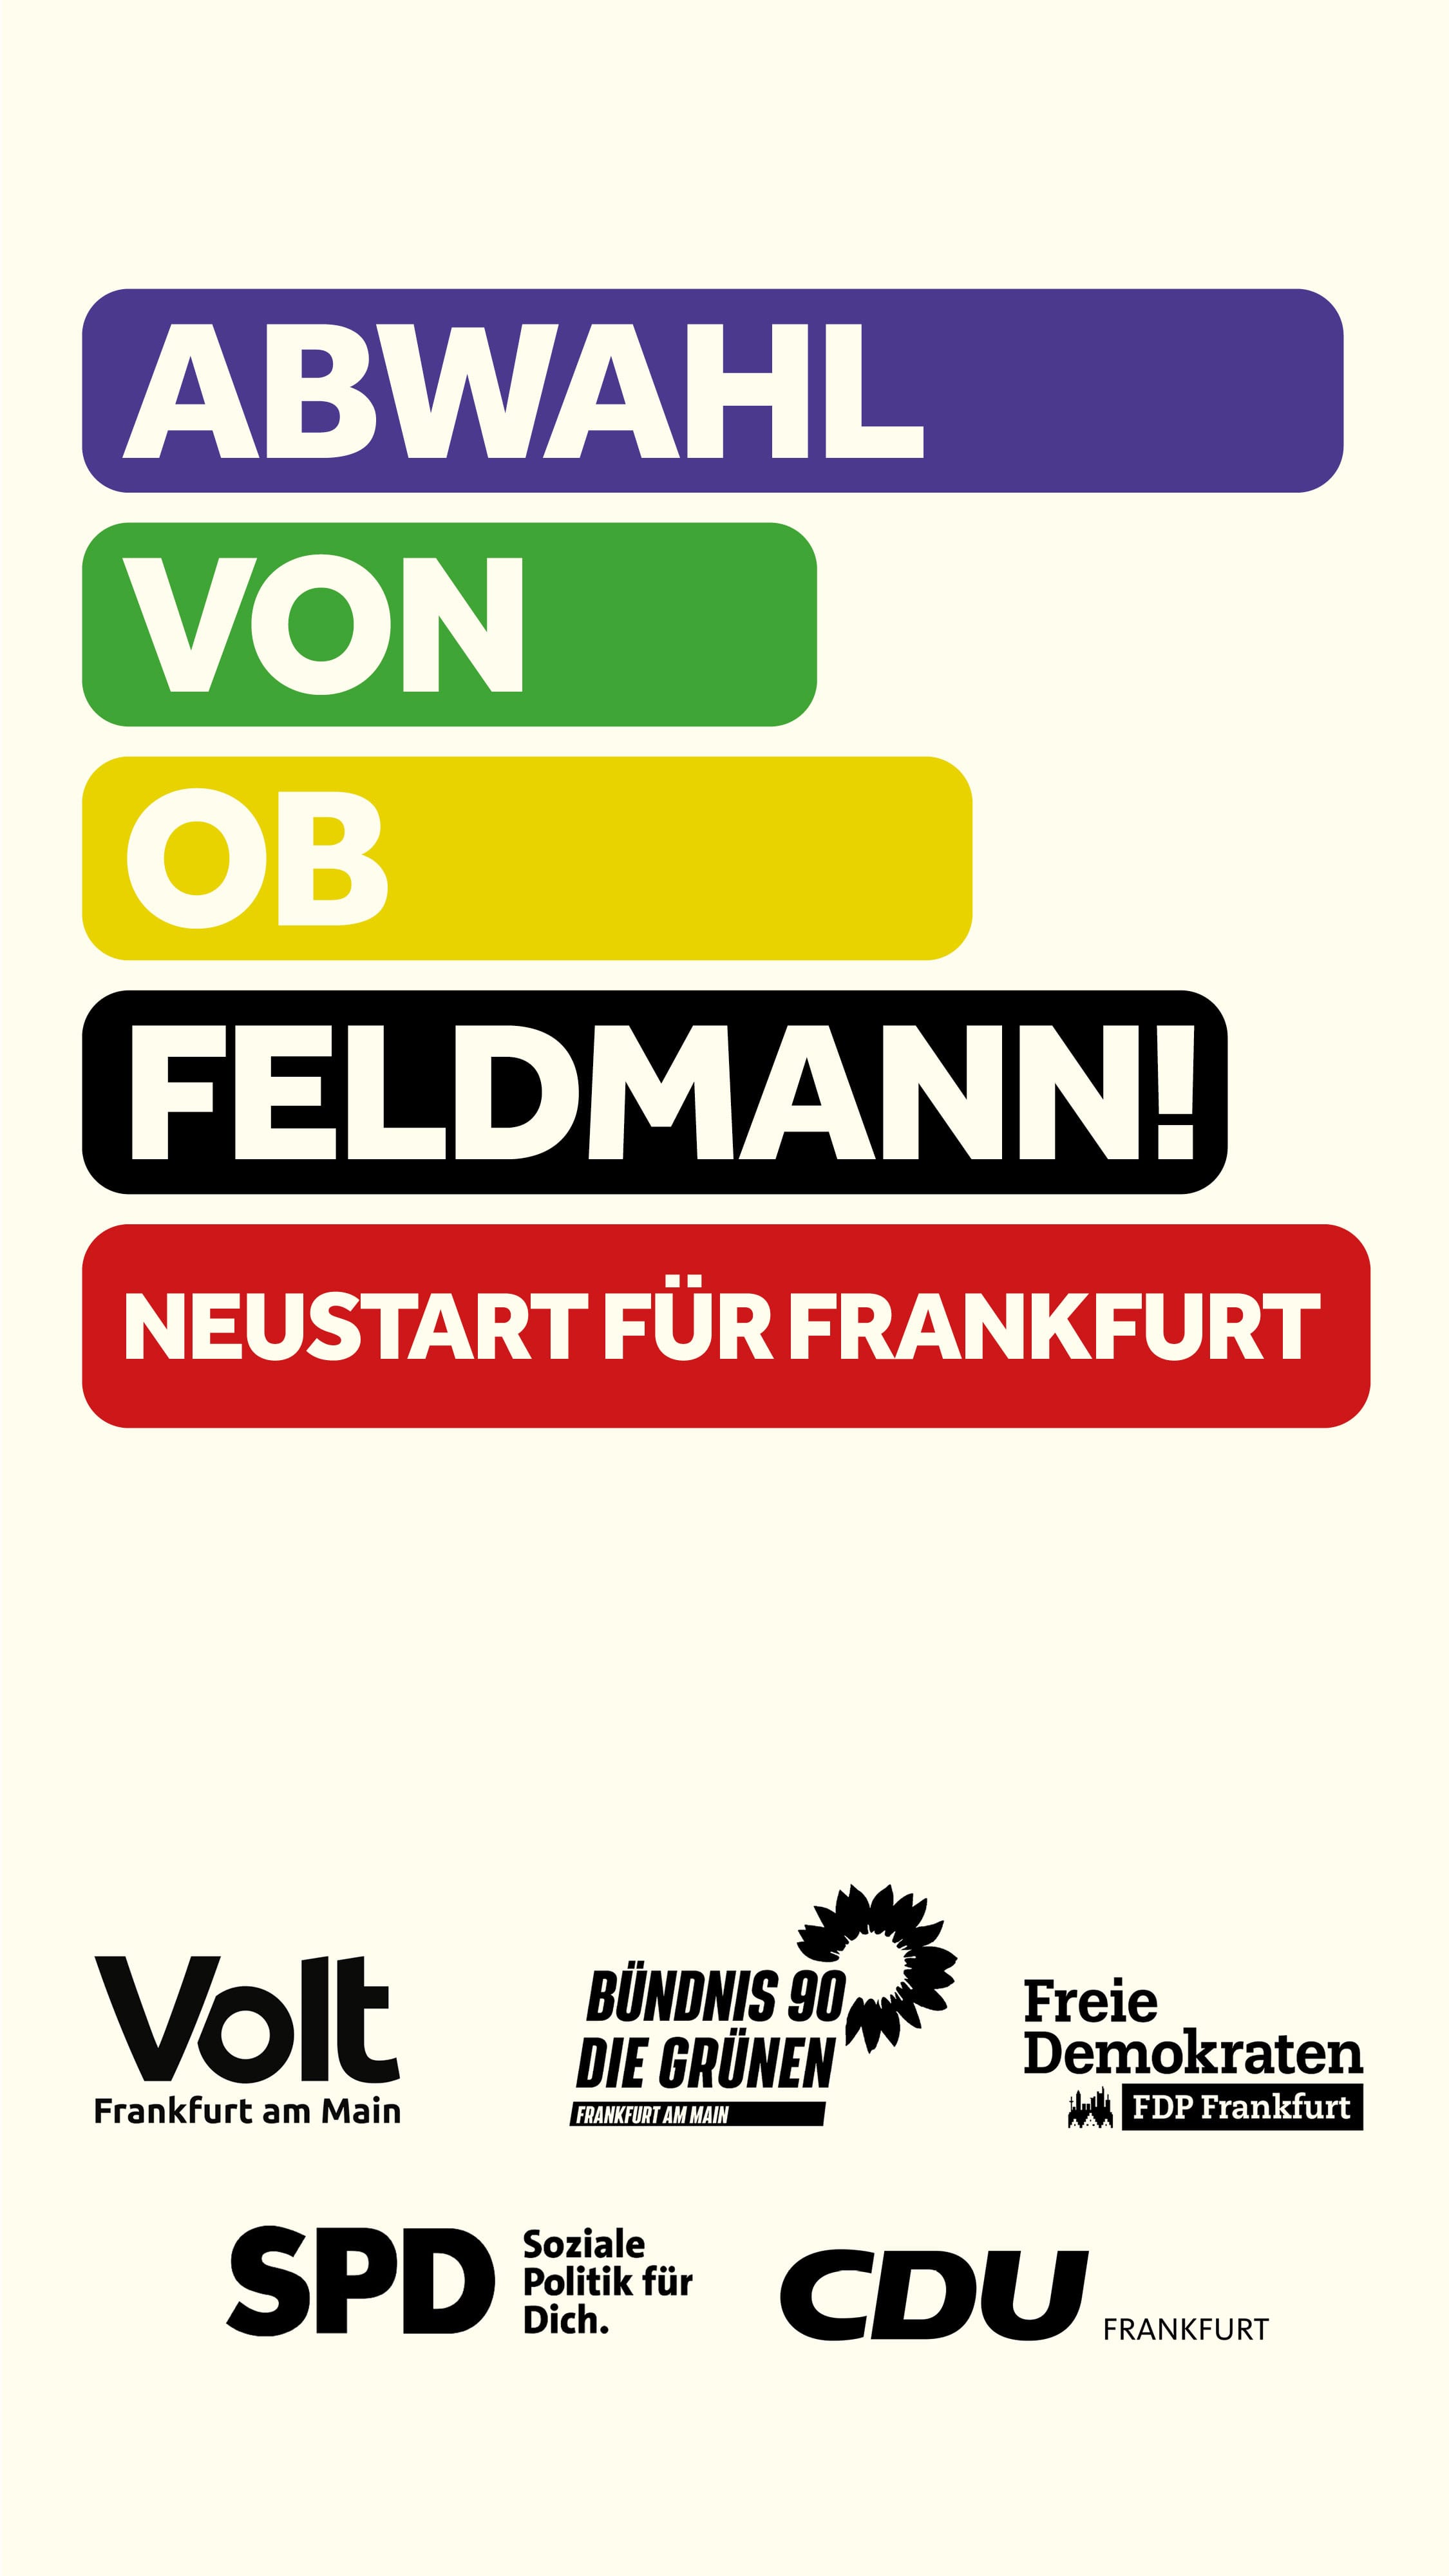 Abwahl von OB Feldmann! — Neustart für Frankfurt!